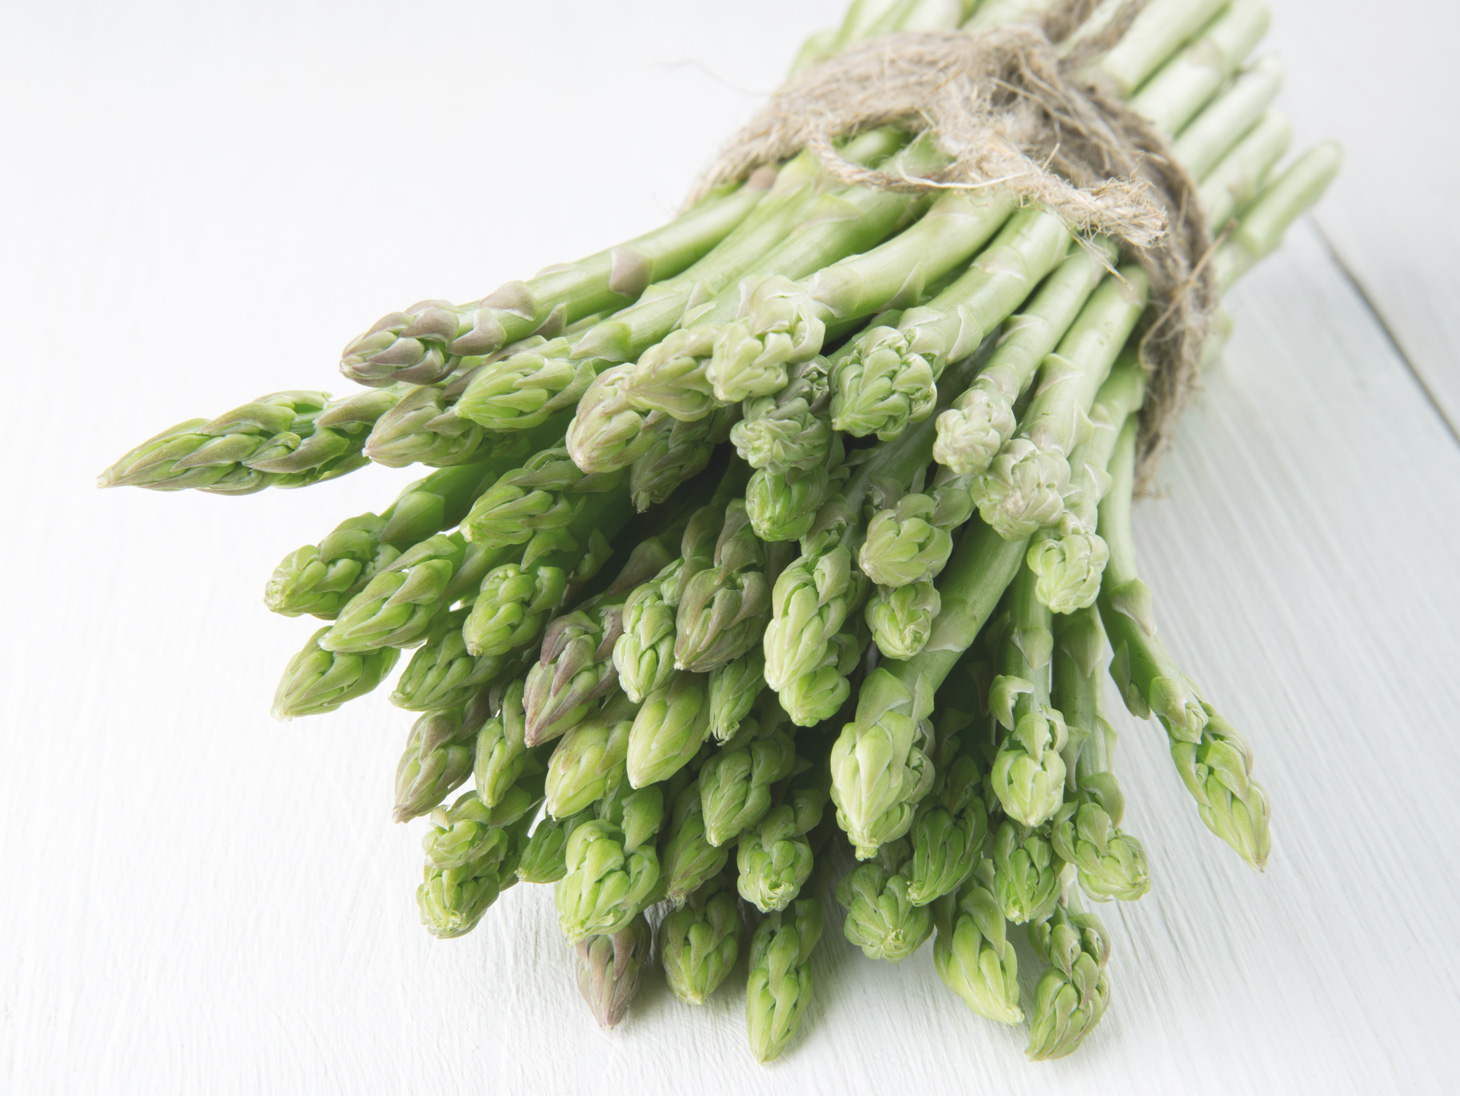 The asparagus